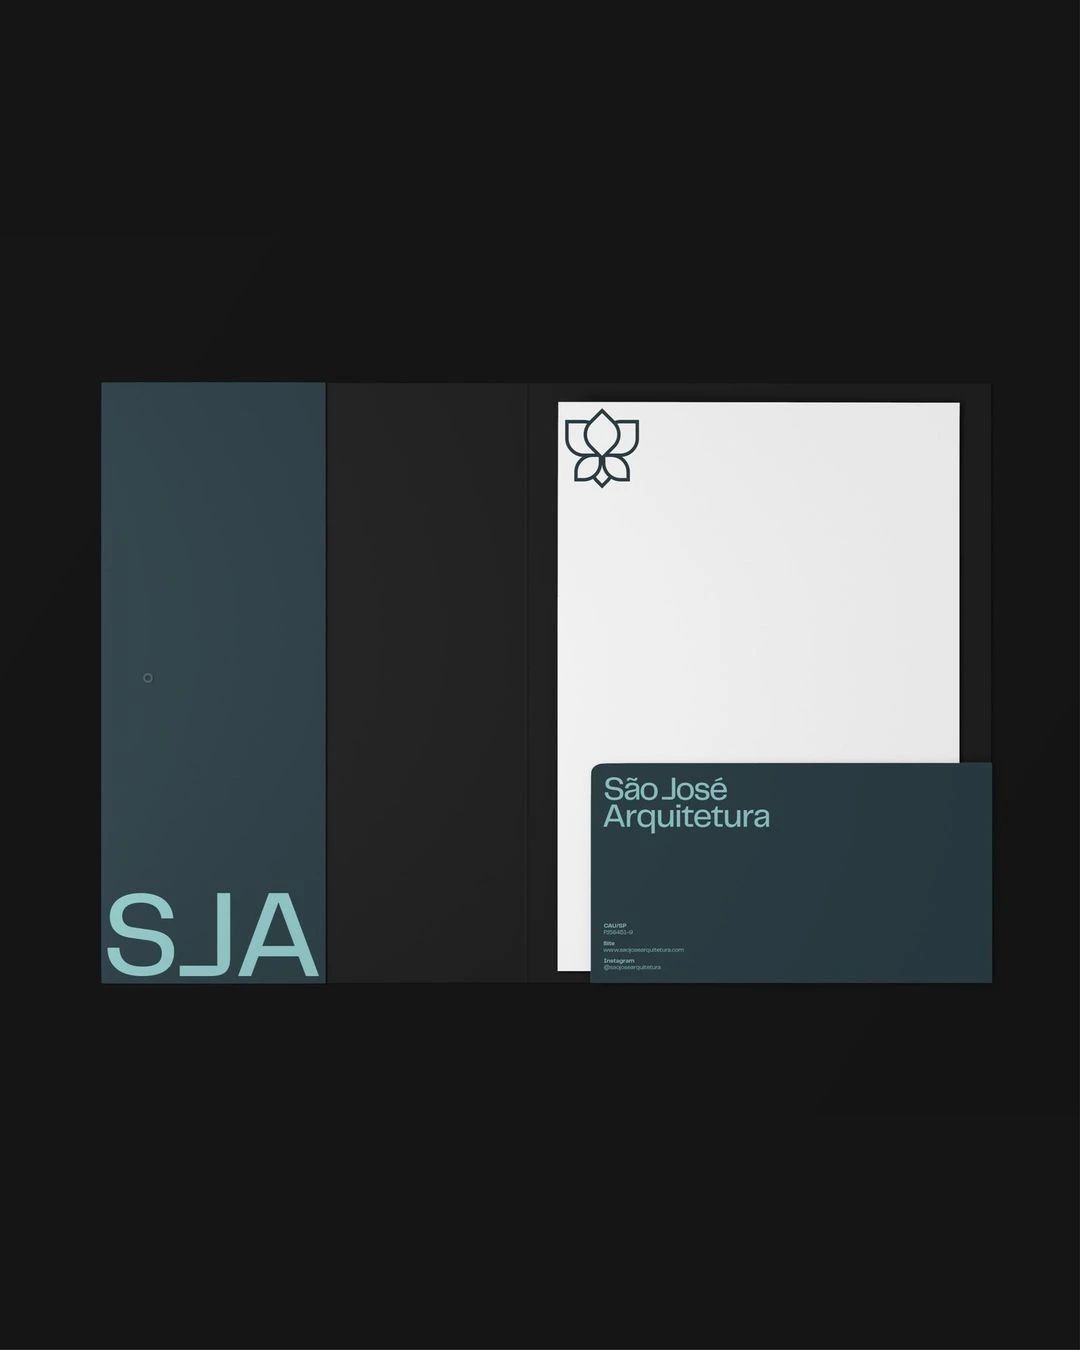 SJA建筑工作室品牌形象重塑